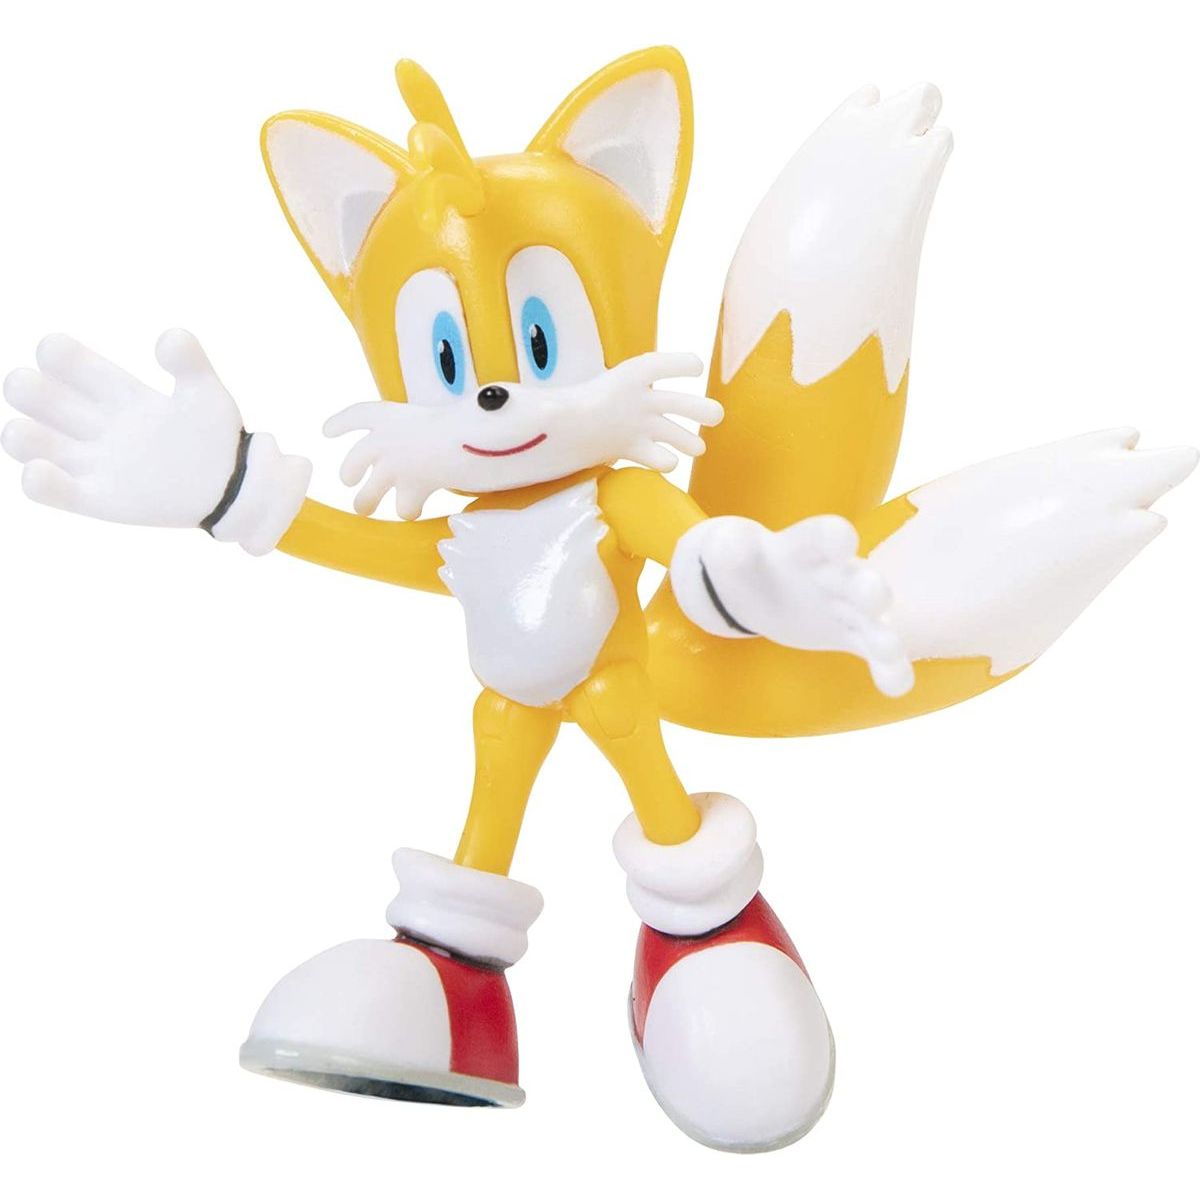 Sonic figurka 6 cm W5 Tails